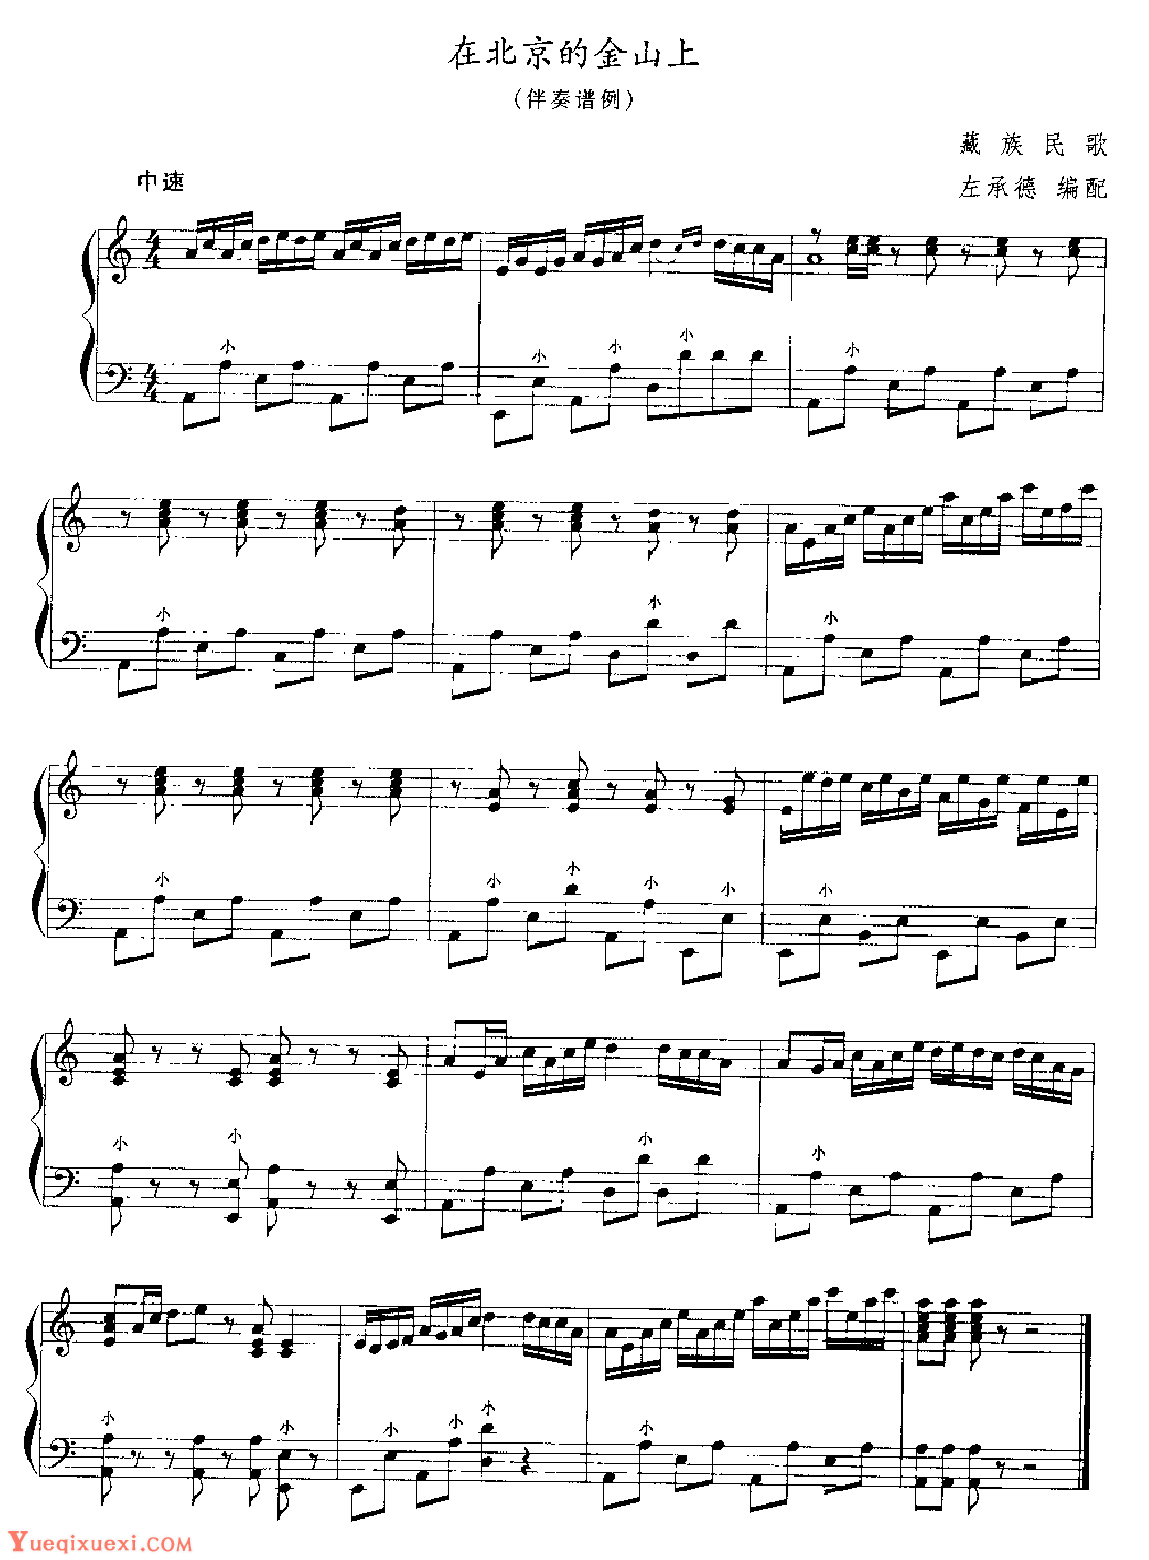 应掌握的几种手风琴伴奏类型9